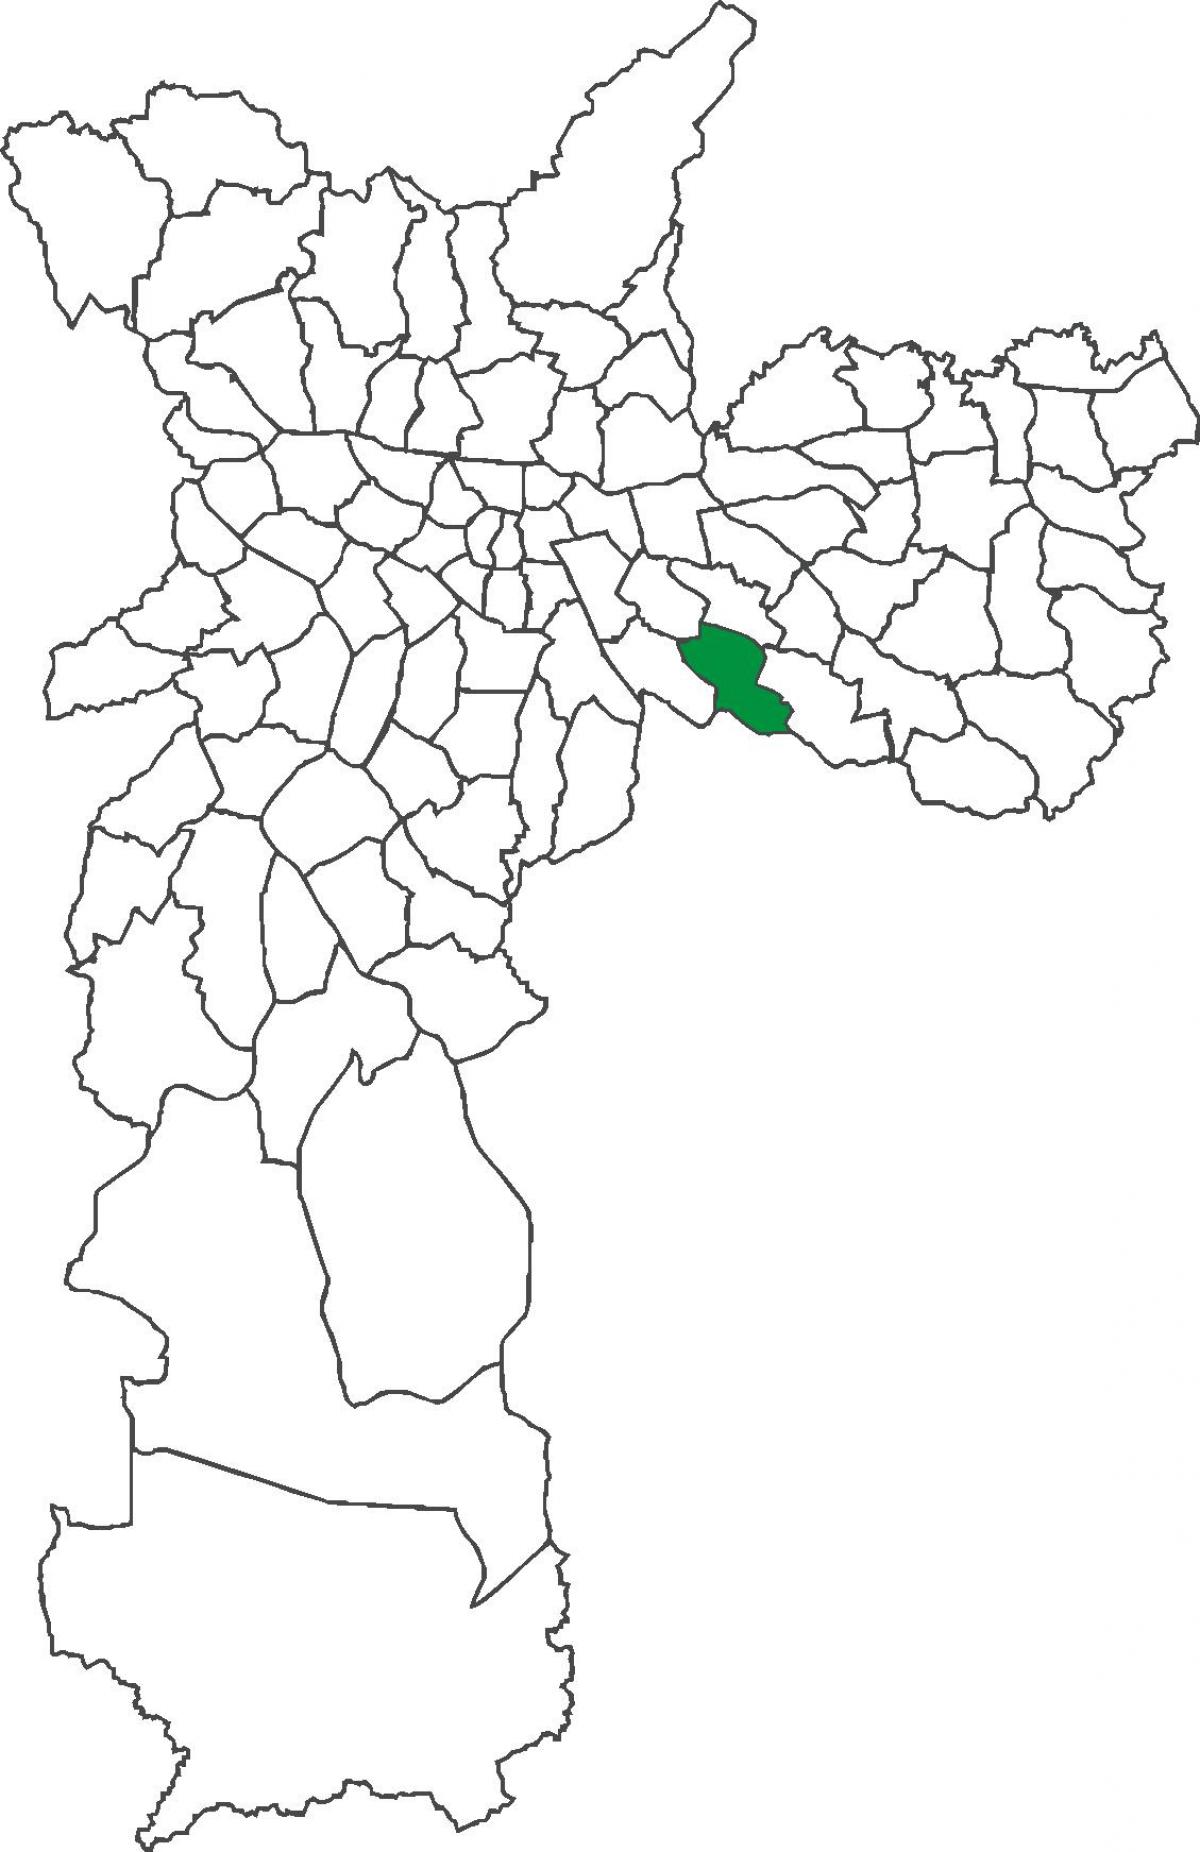 মানচিত্র São Lucas জেলা